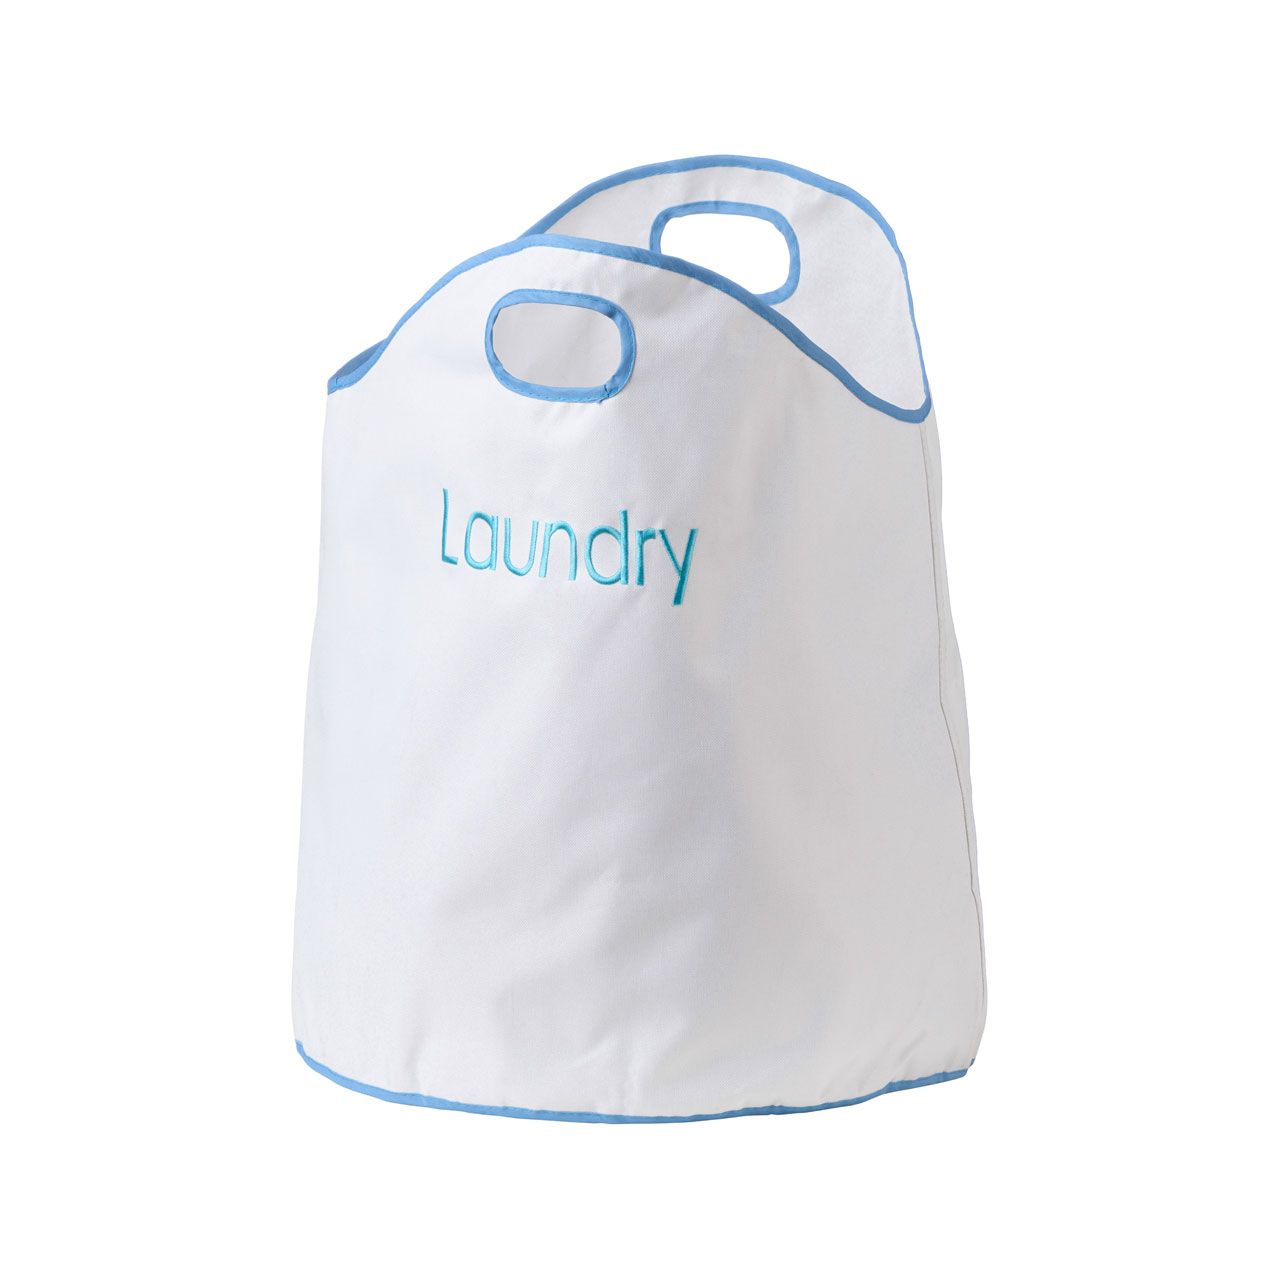 Homewares Oxford Blue Trim Laundry Bag